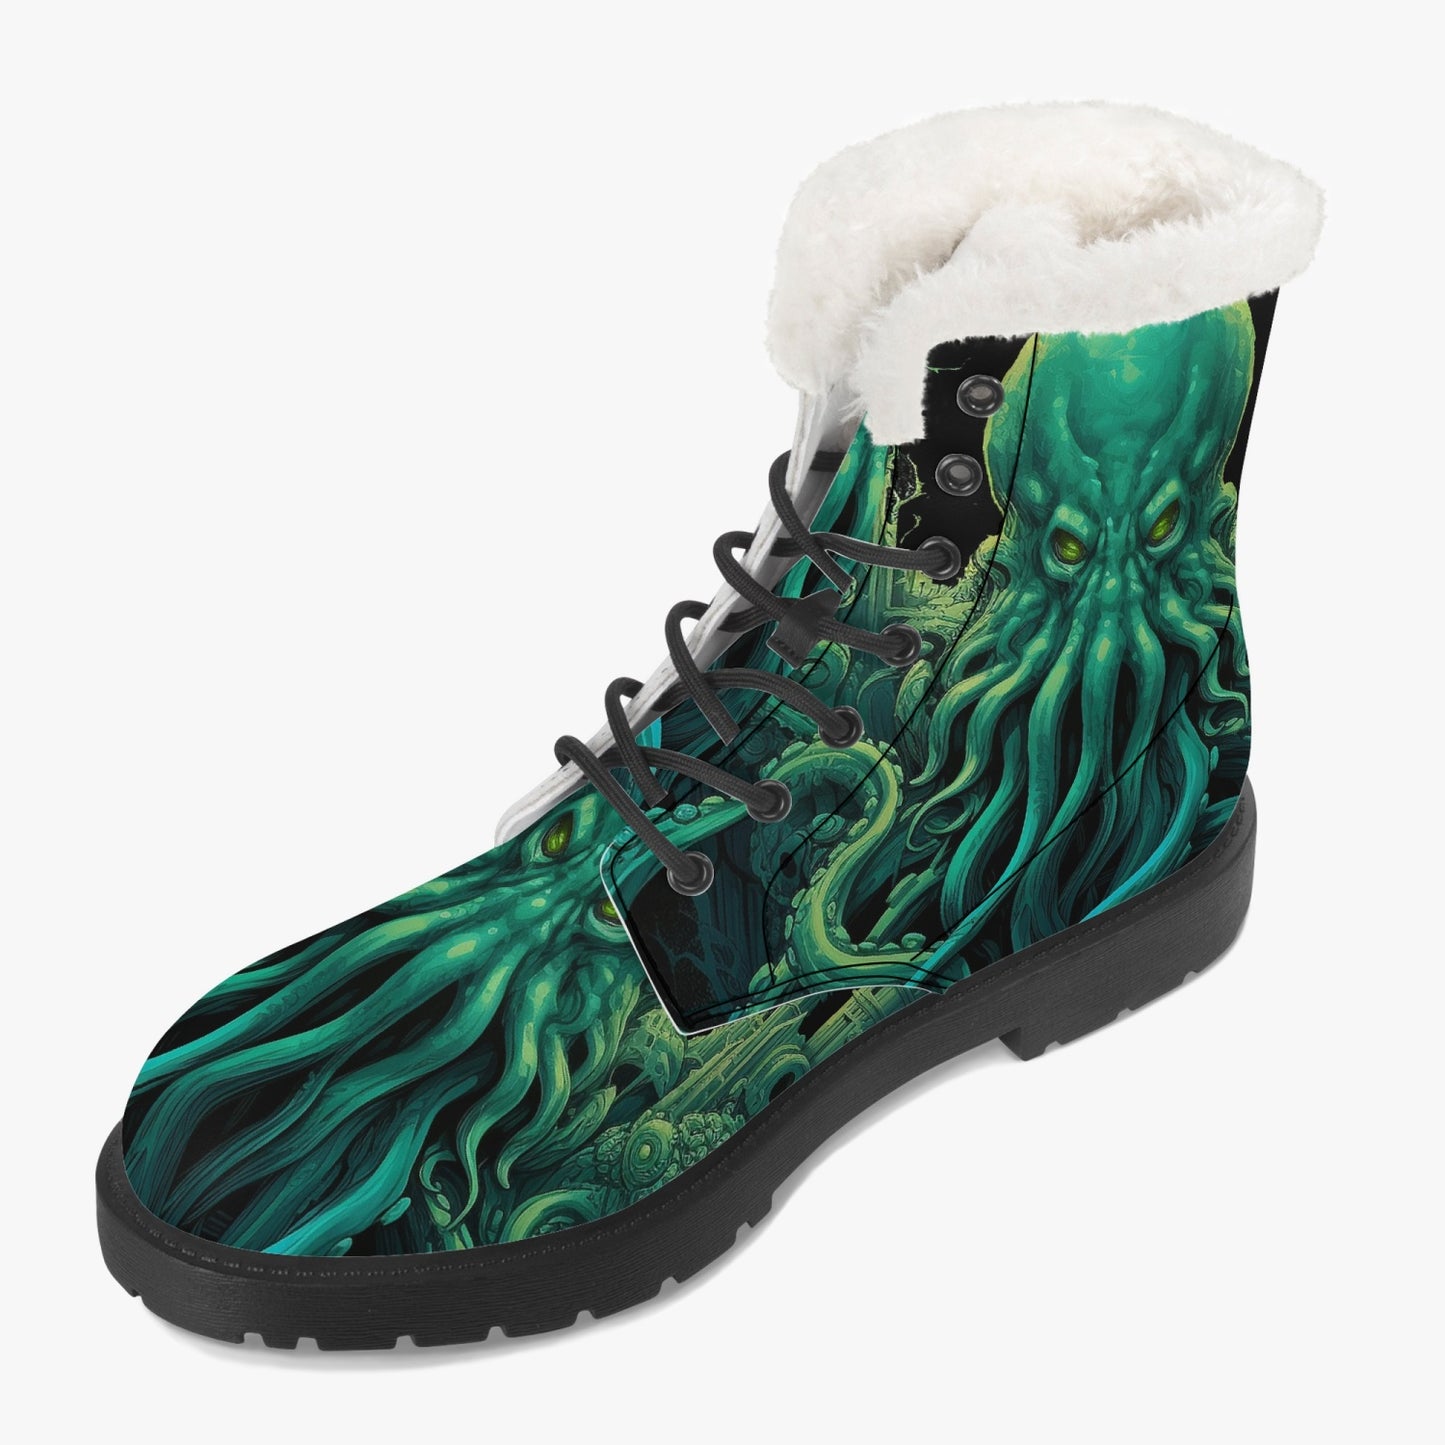 Cthulhu Victorian Horror Combat Boots - HP Lovecraft Sea Monster Green Boots (JPREGFHP)